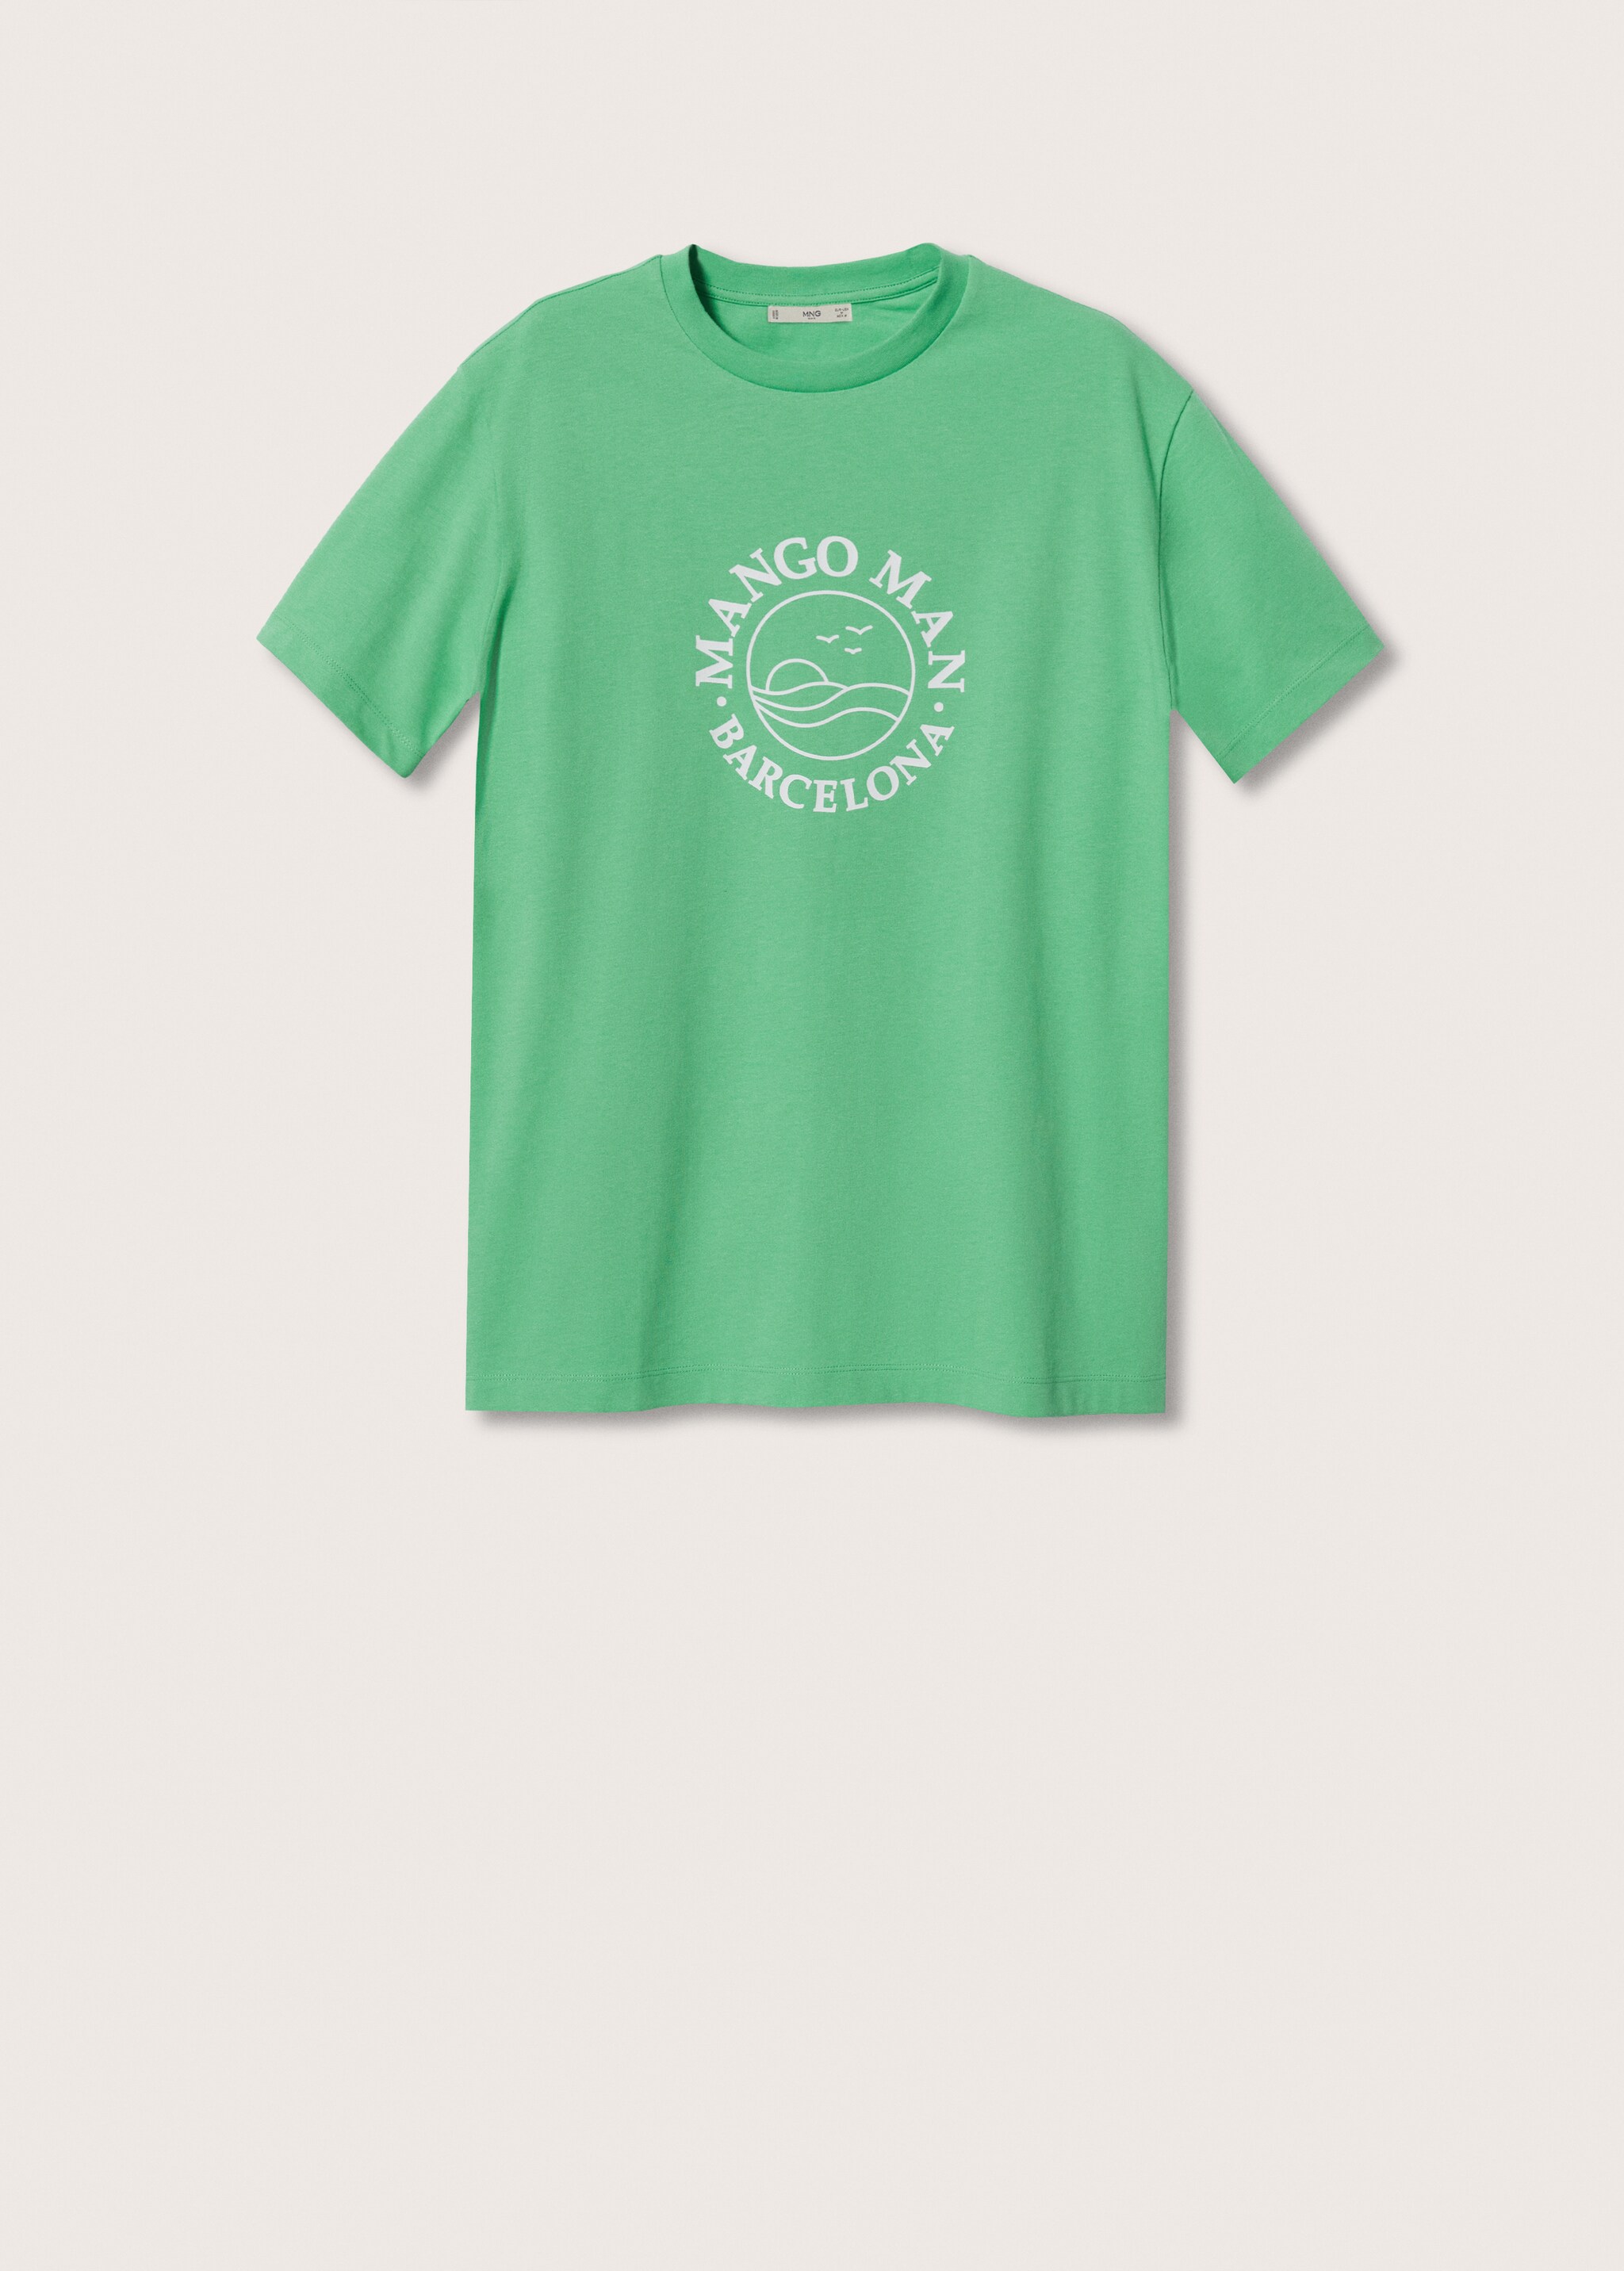 Camiseta algodón logo - Artículo sin modelo